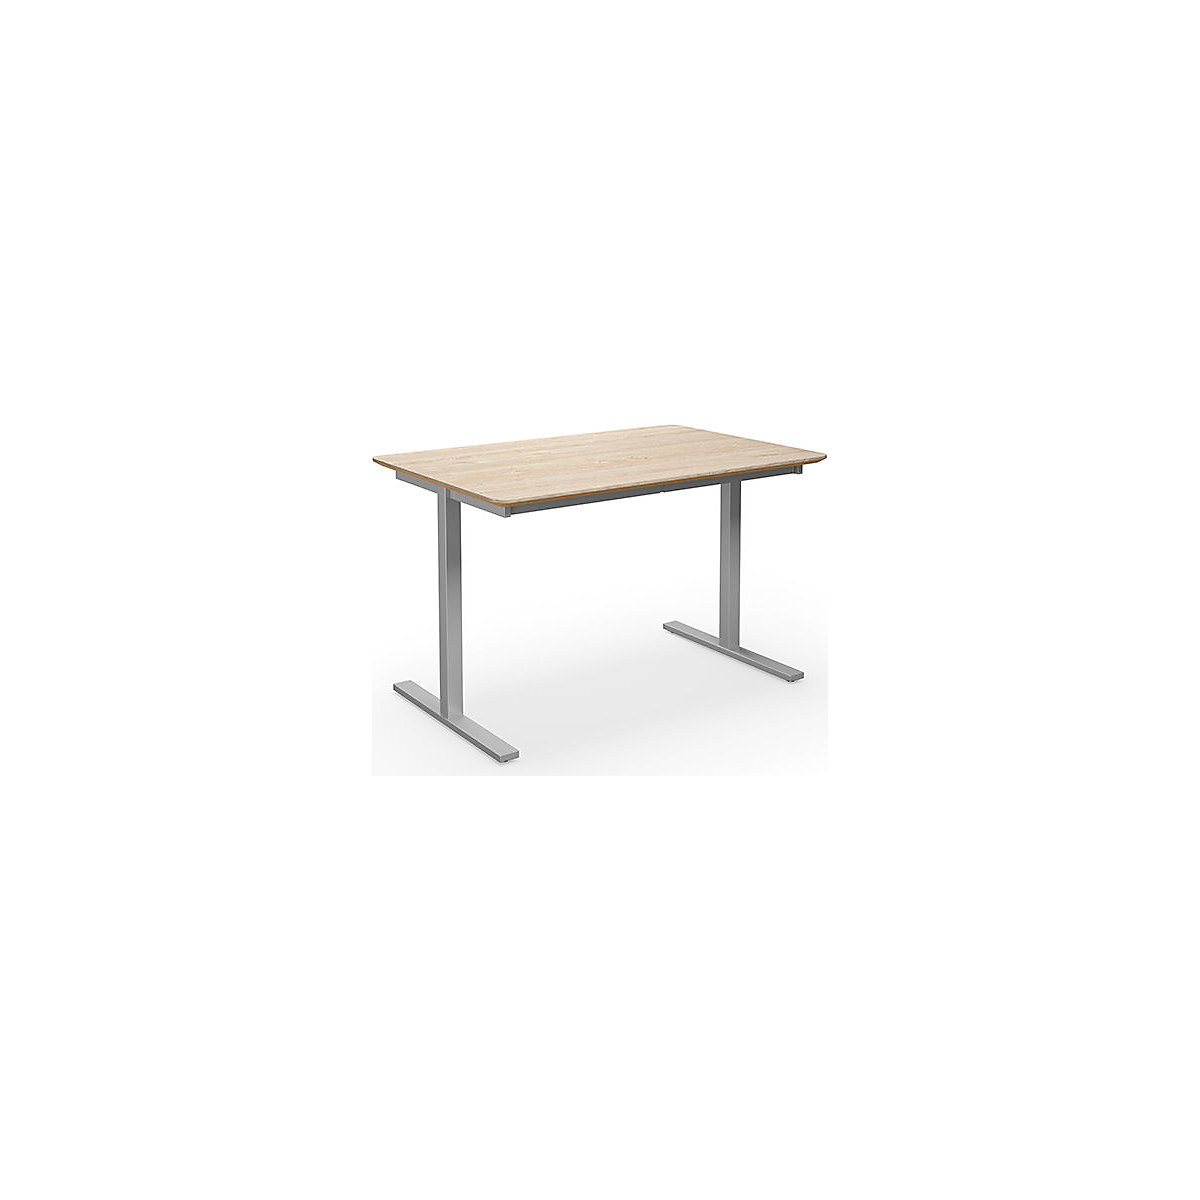 Multifunctionele tafel DUO-T Trend, recht blad, afgeronde hoeken